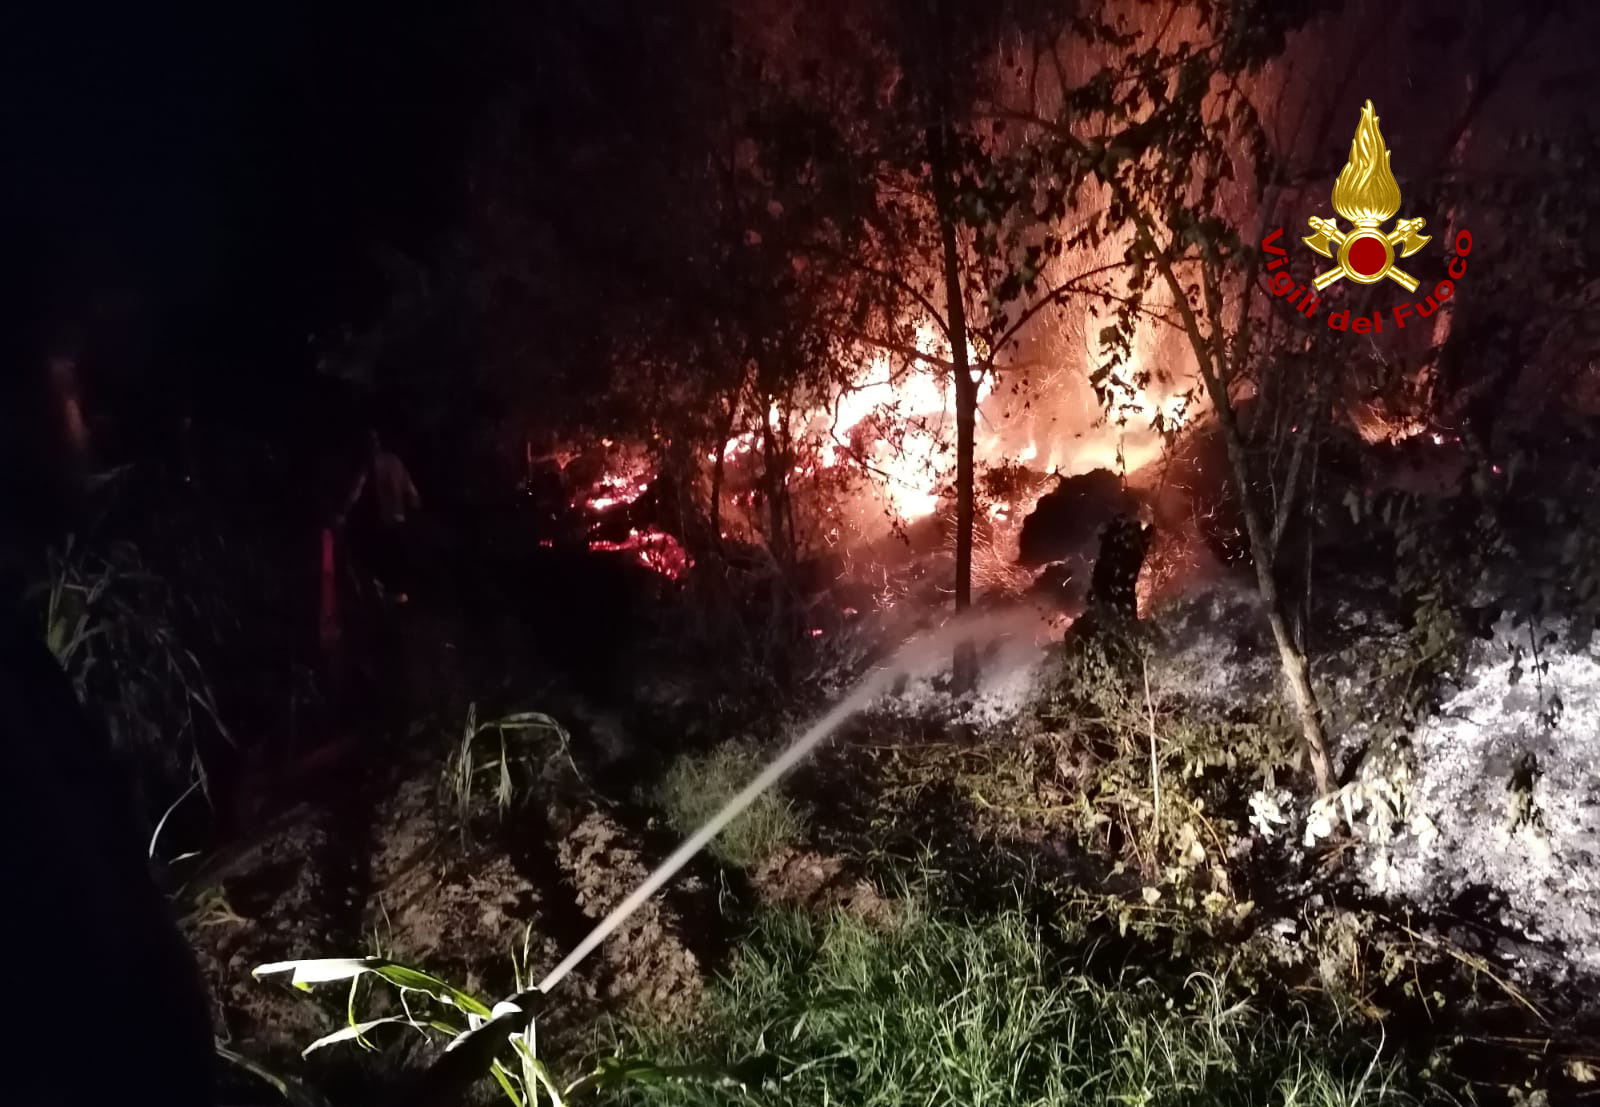 Incendio in un'azienda agricola, pompieri al lavoro tutta notte